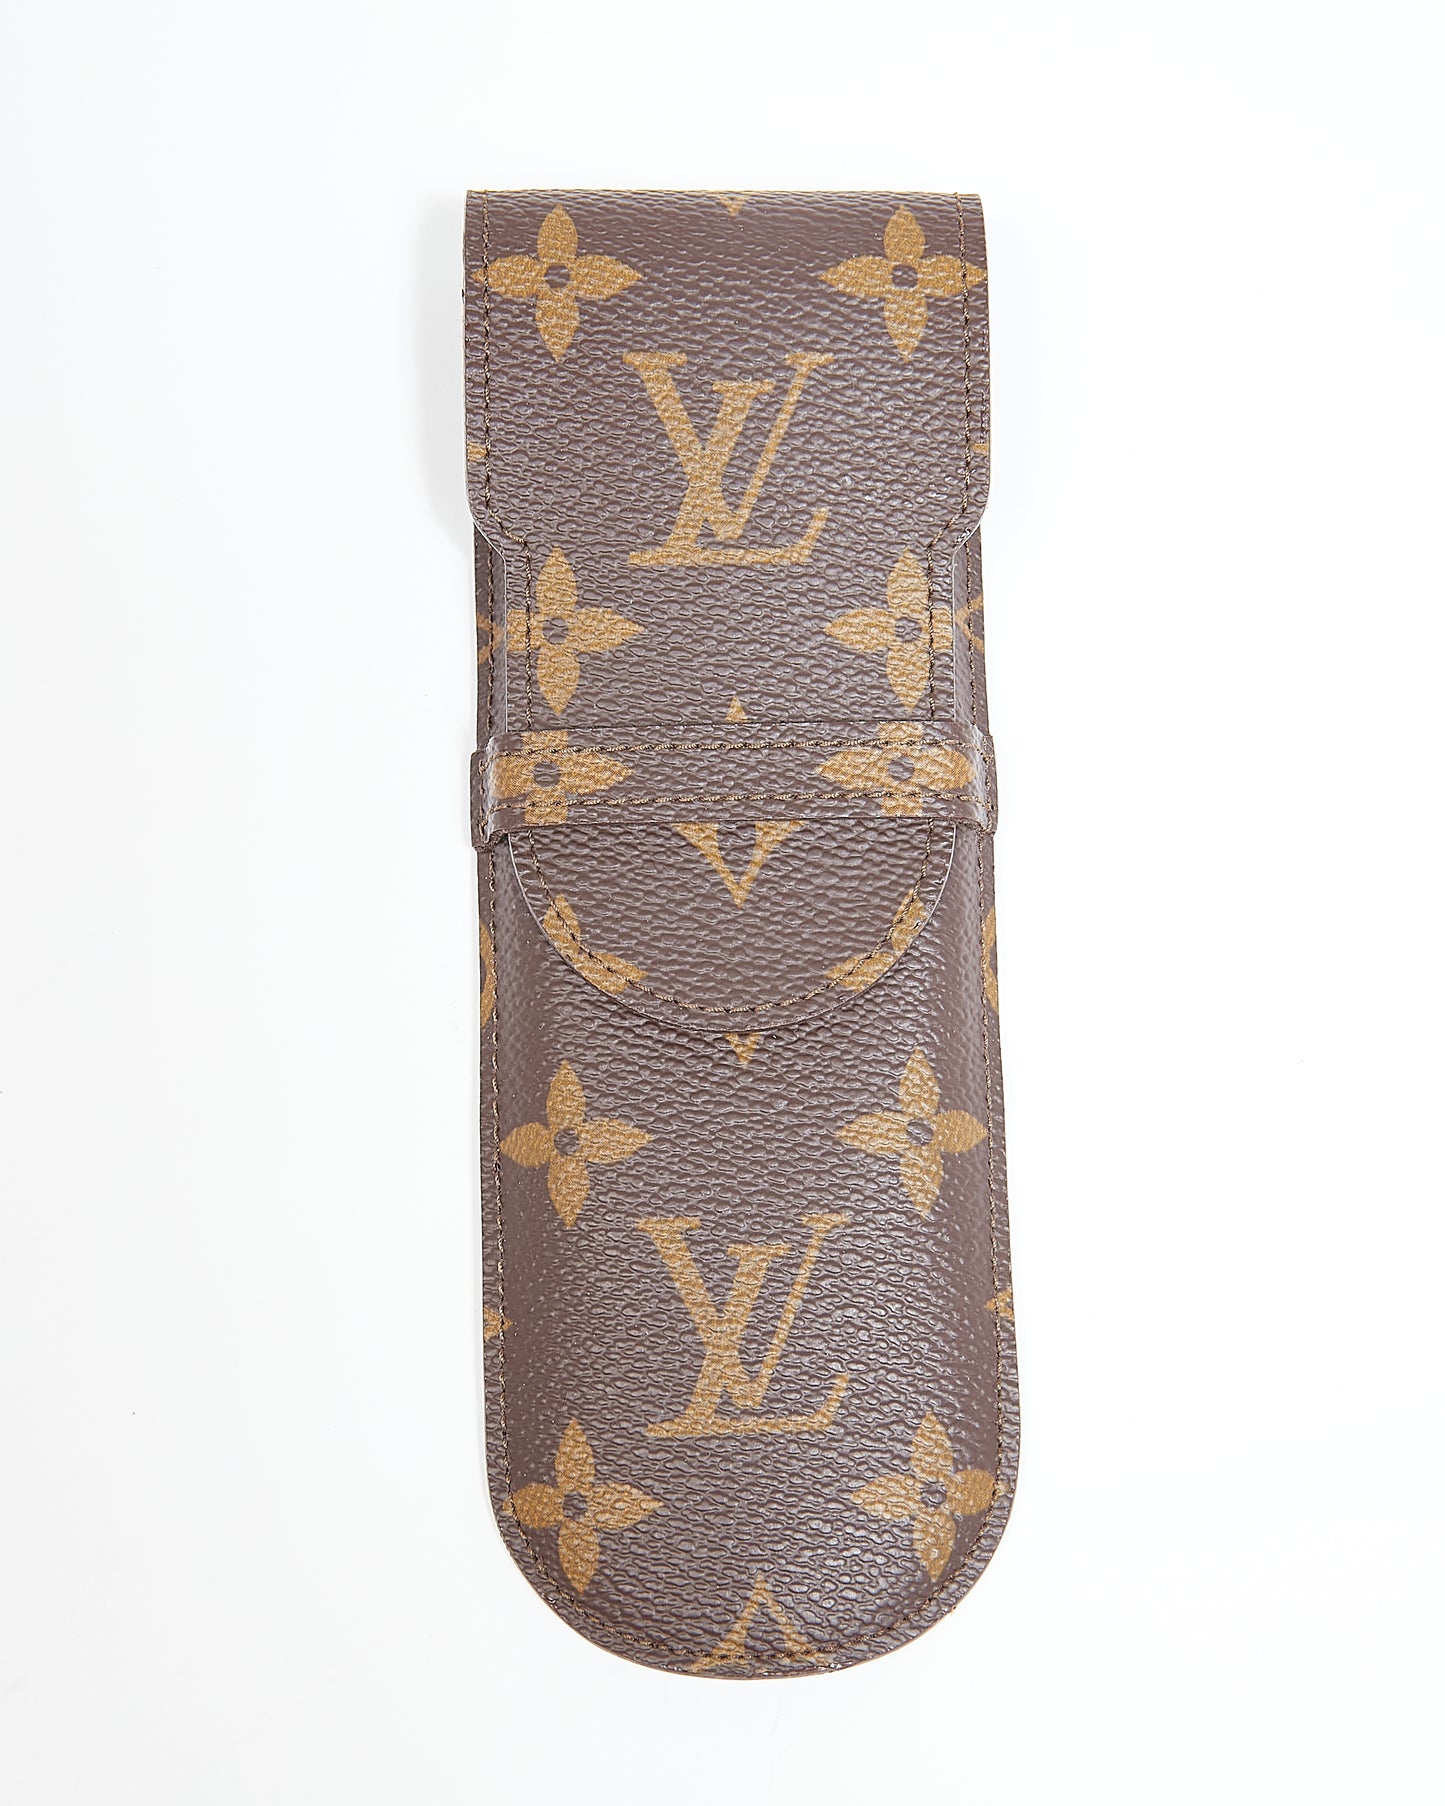 Louis Vuitton Monogram Canvas Pen Case